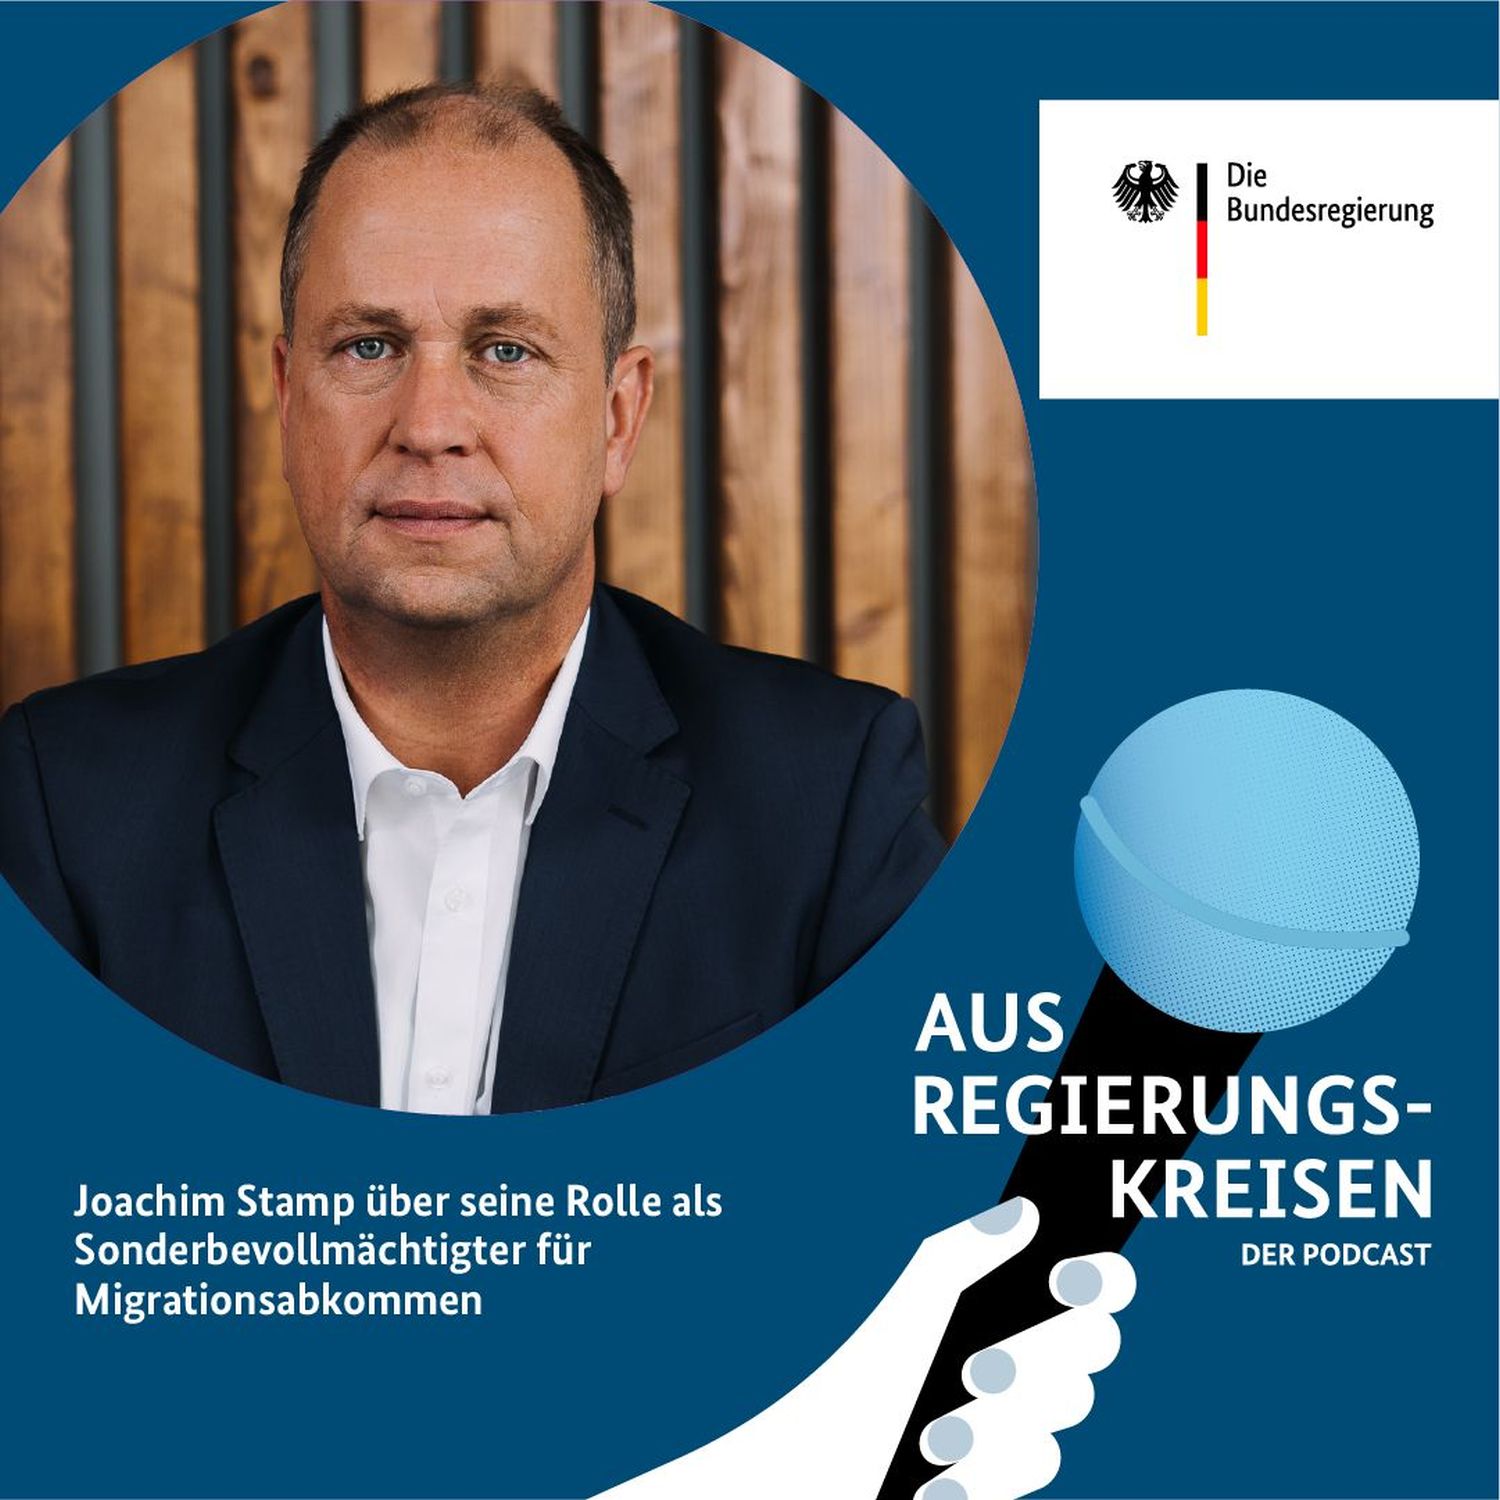 Wie sehen faire Migrationsabkommen aus, Joachim Stamp?